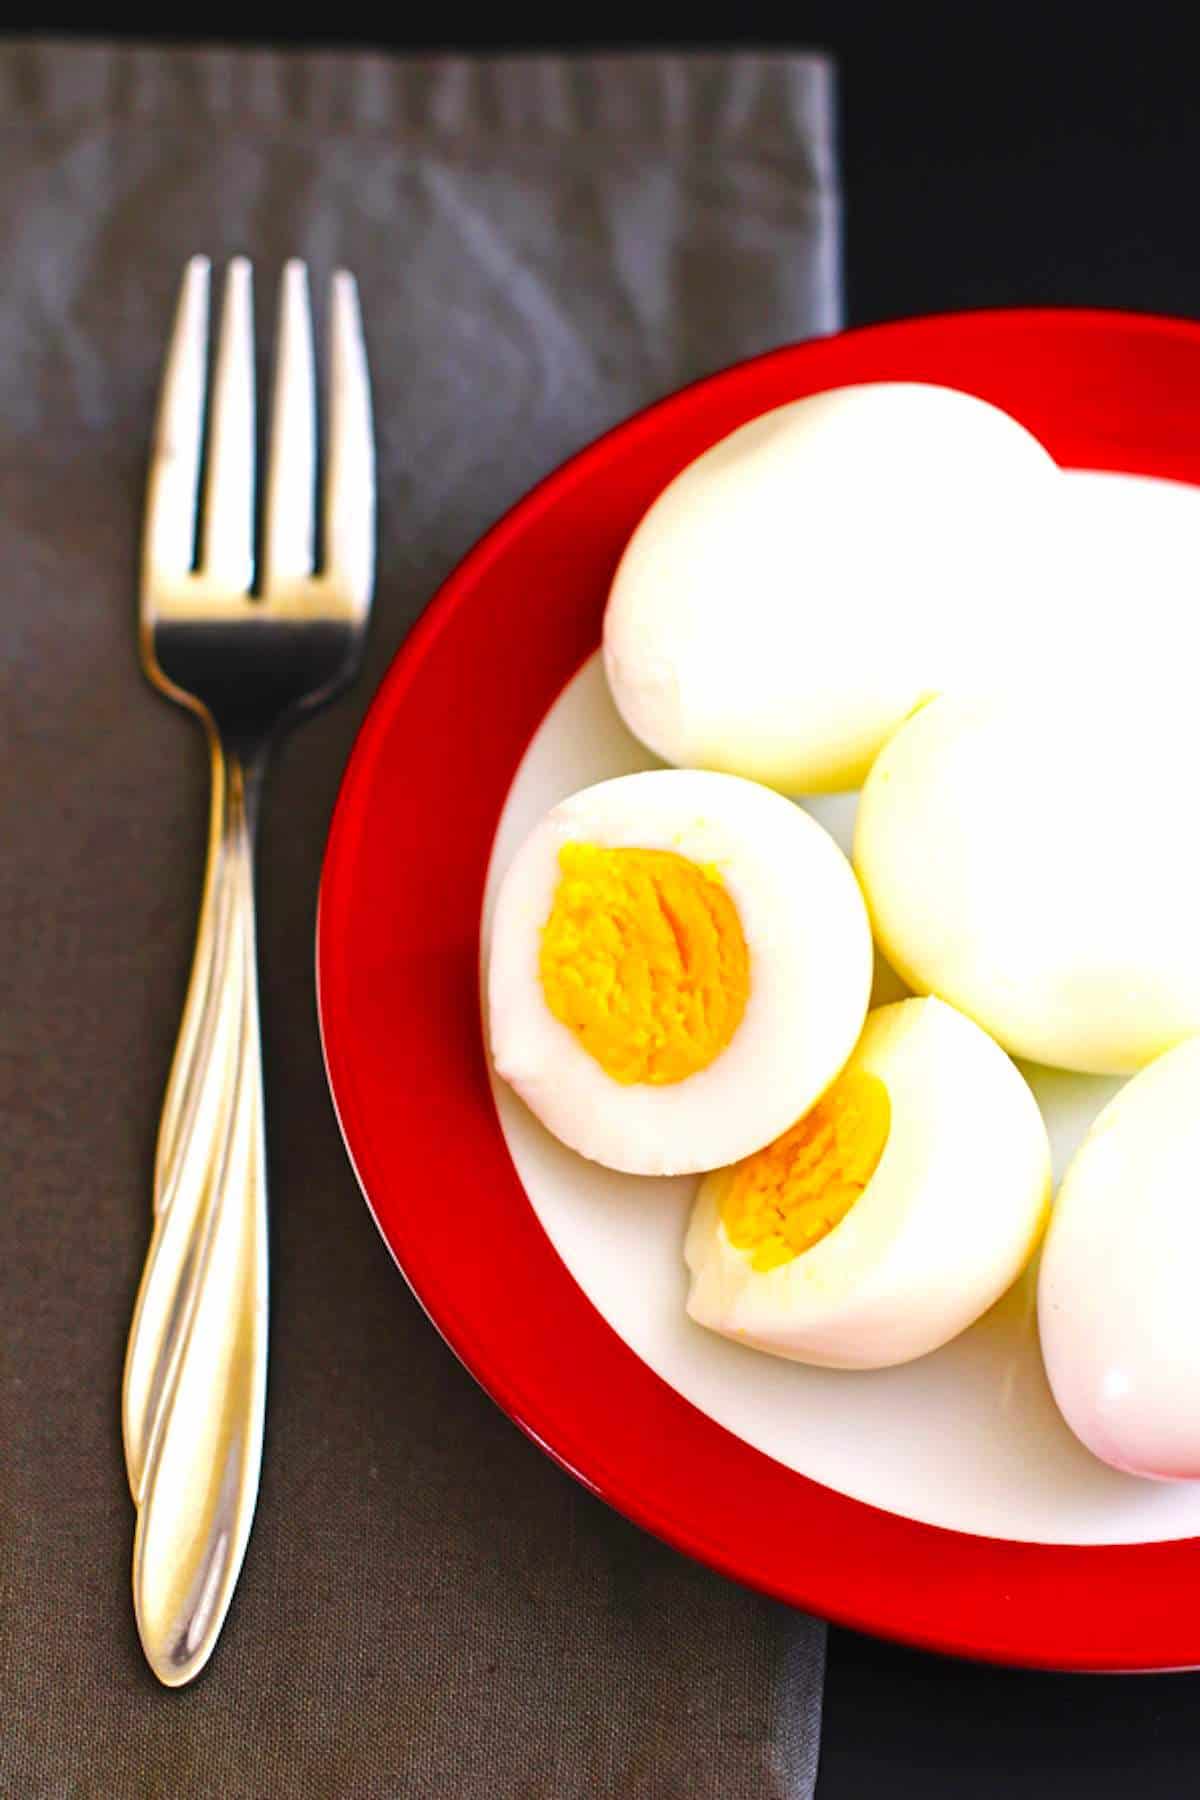 Sliced hardboiled eggs for making easy egg salad.